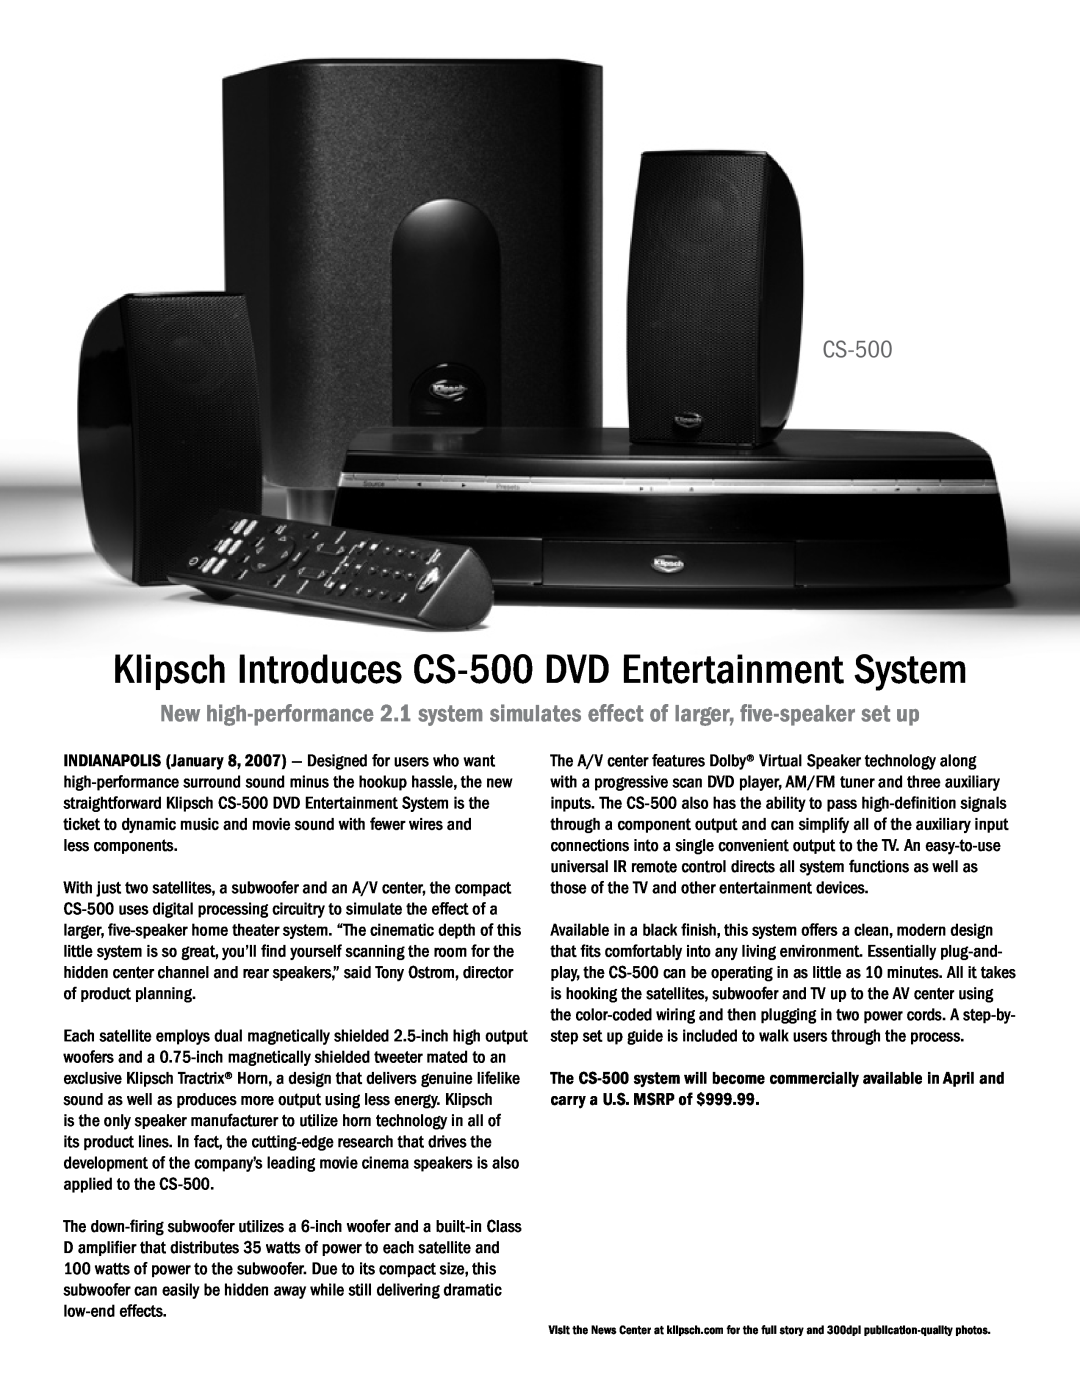 PYLE Audio CES 2007 manual Klipsch Introduces CS-500DVD Entertainment System 